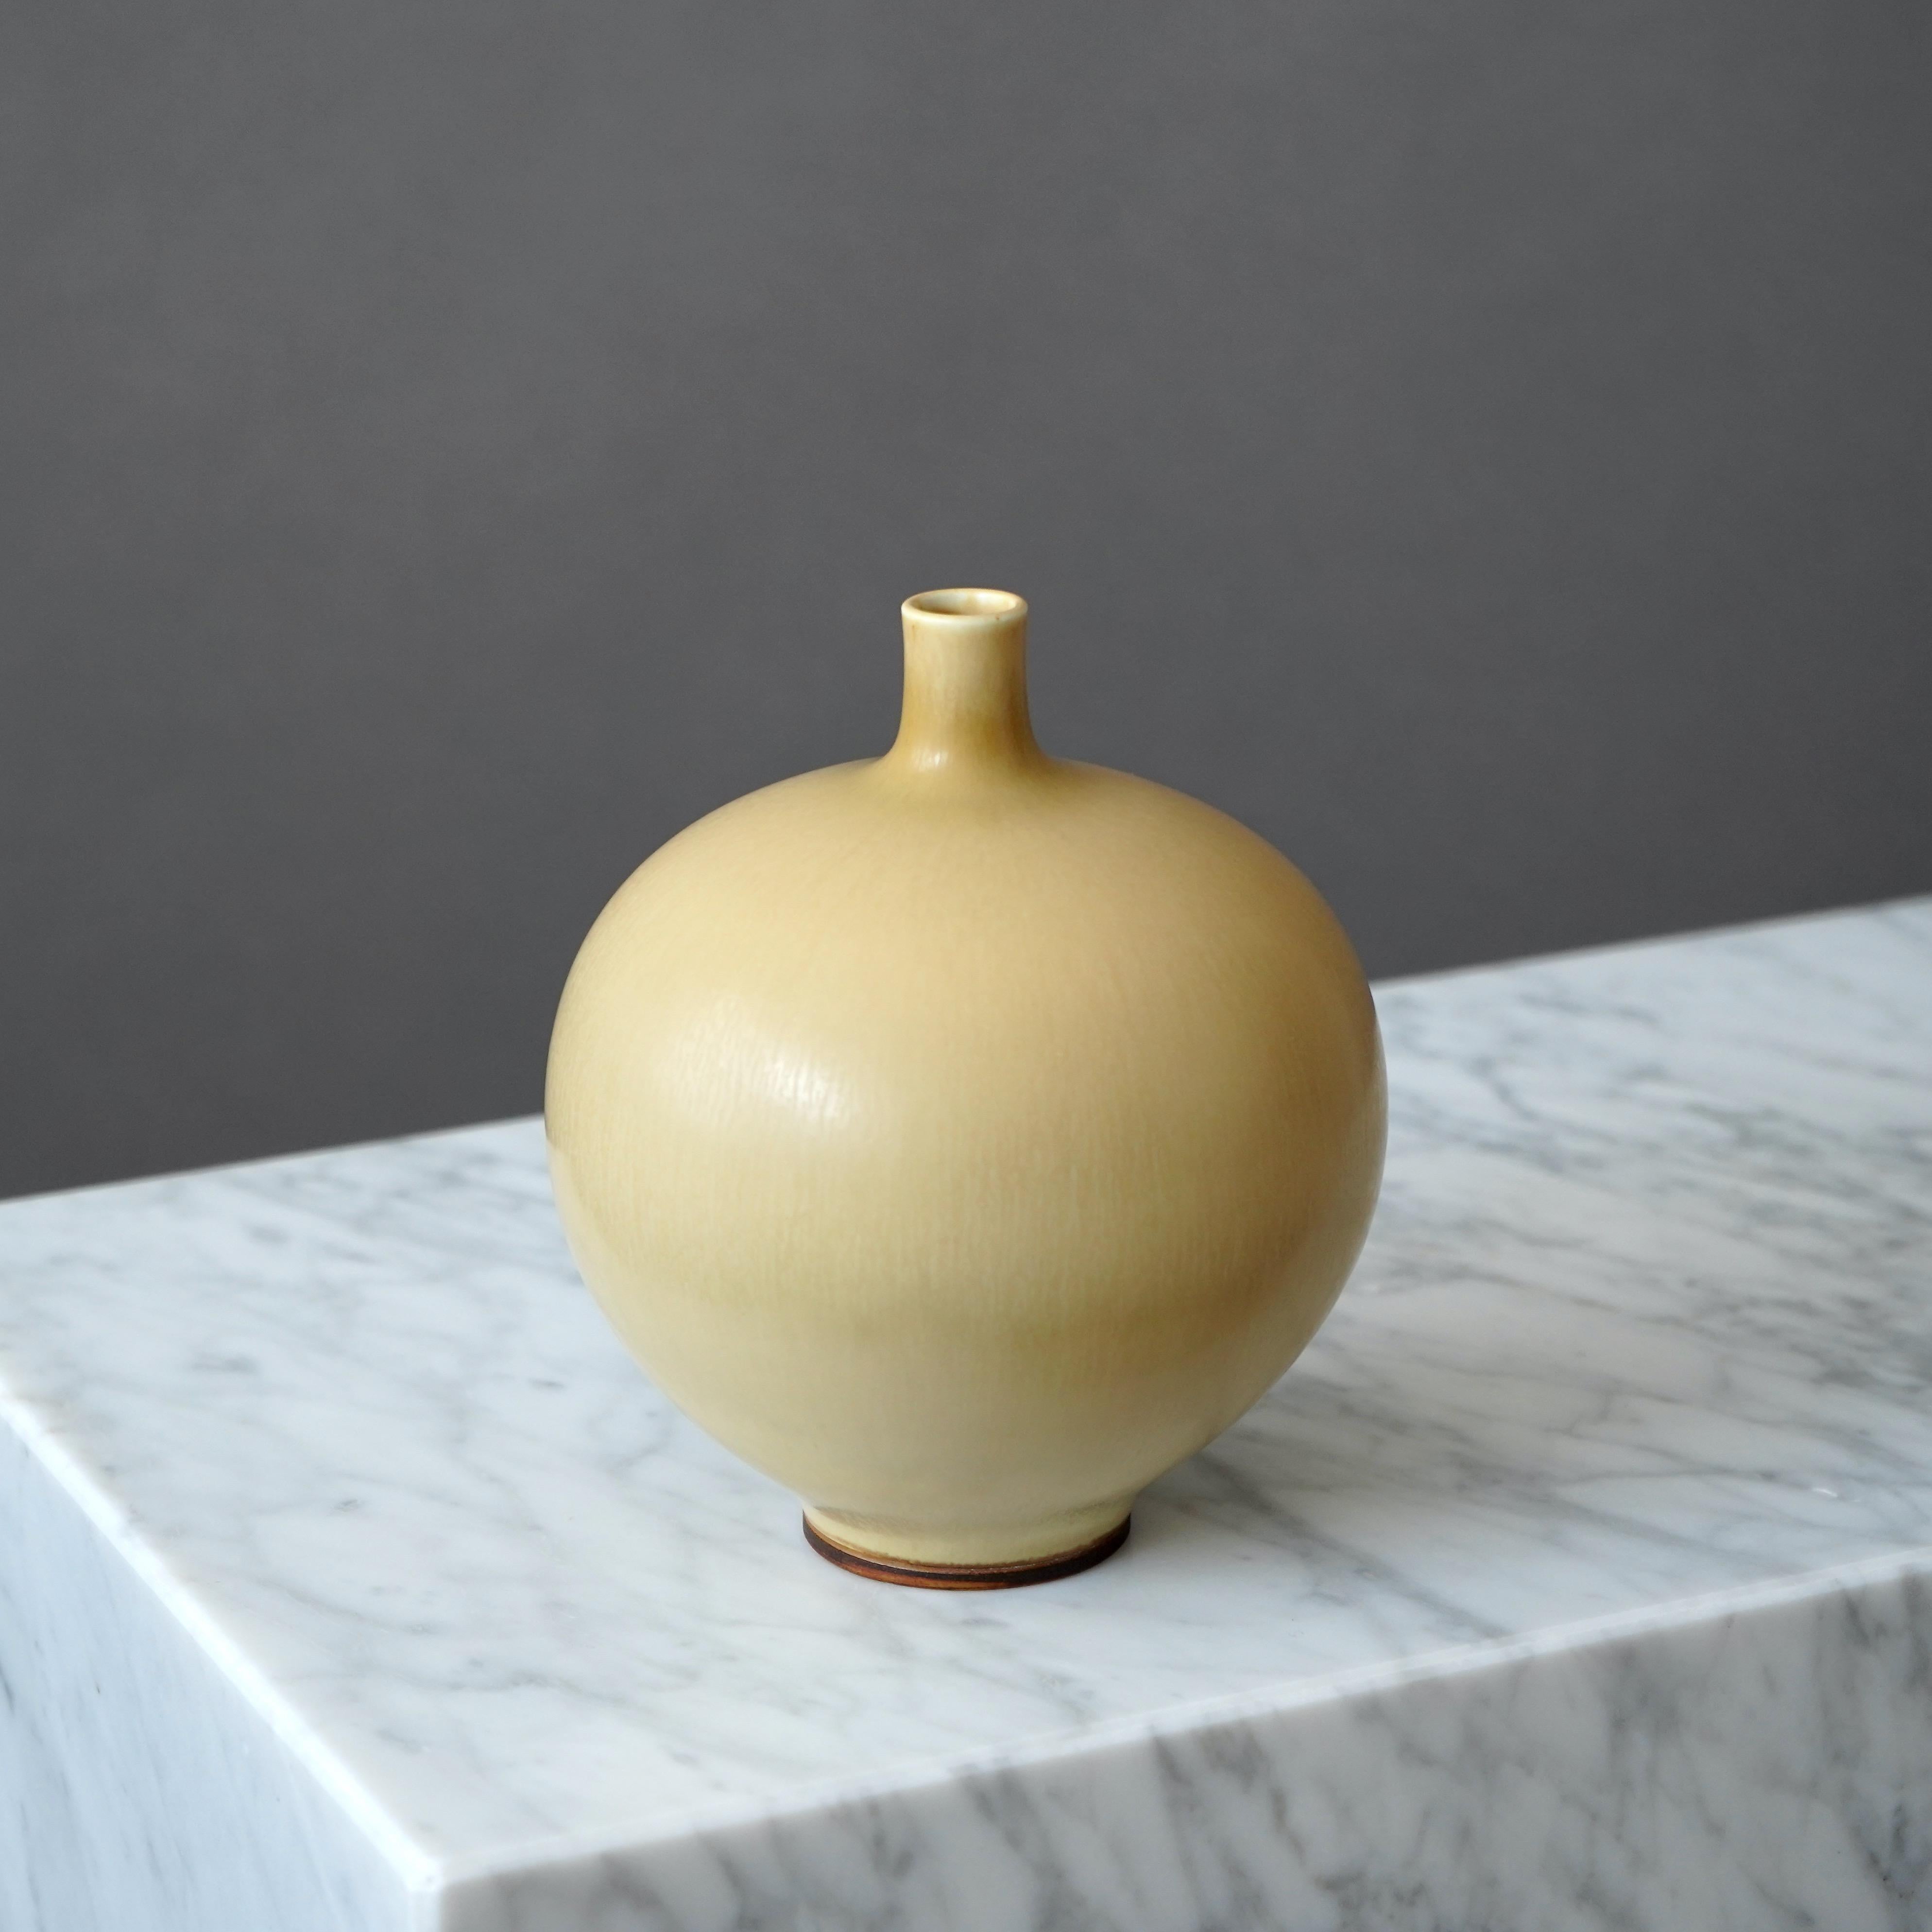 Scandinavian Modern Stoneware Vase by Berndt Friberg for Gustavsberg Studio, Sweden, 1964